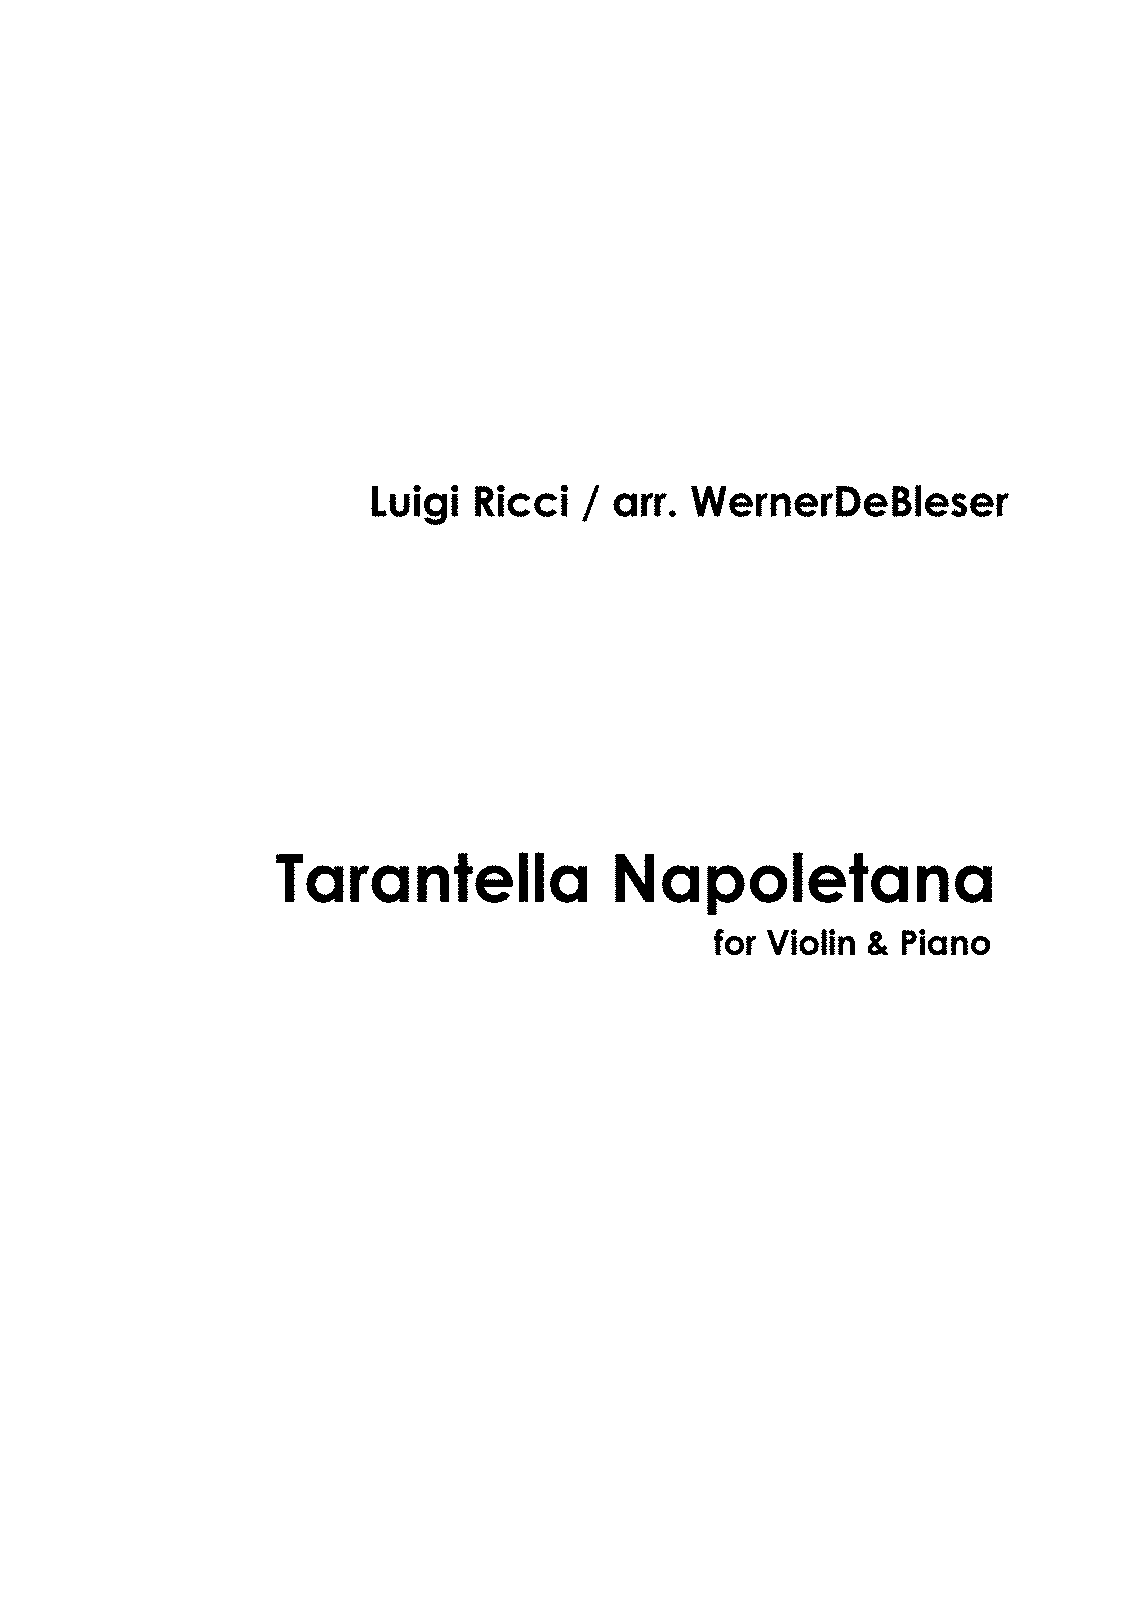 Tarantella Napoletana (Ricci, Luigi) - IMSLP